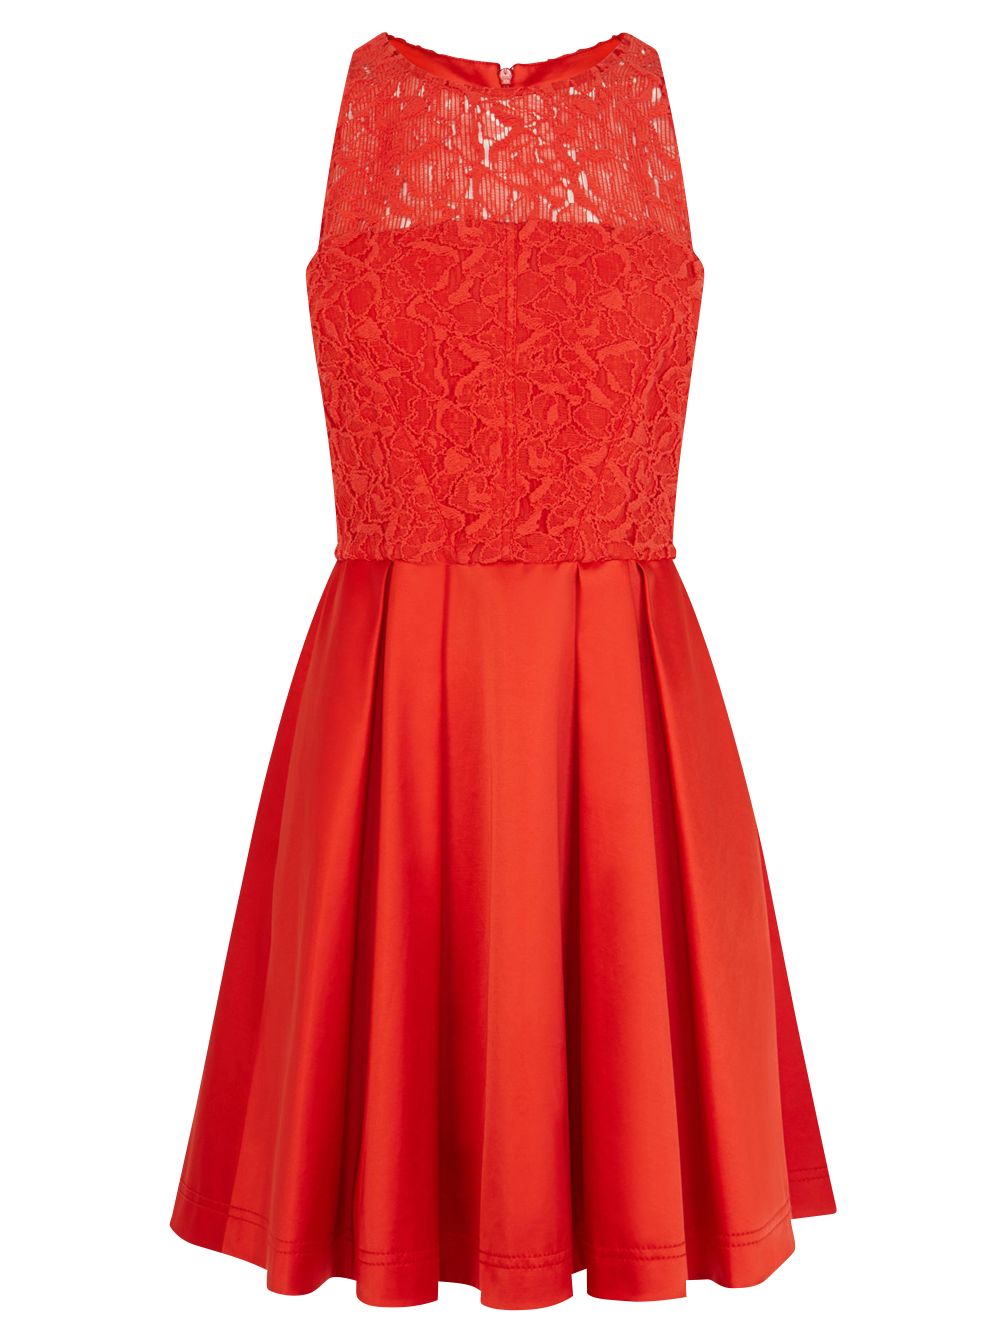 Karen Millen Lace Prom Dress, Red at John Lewis